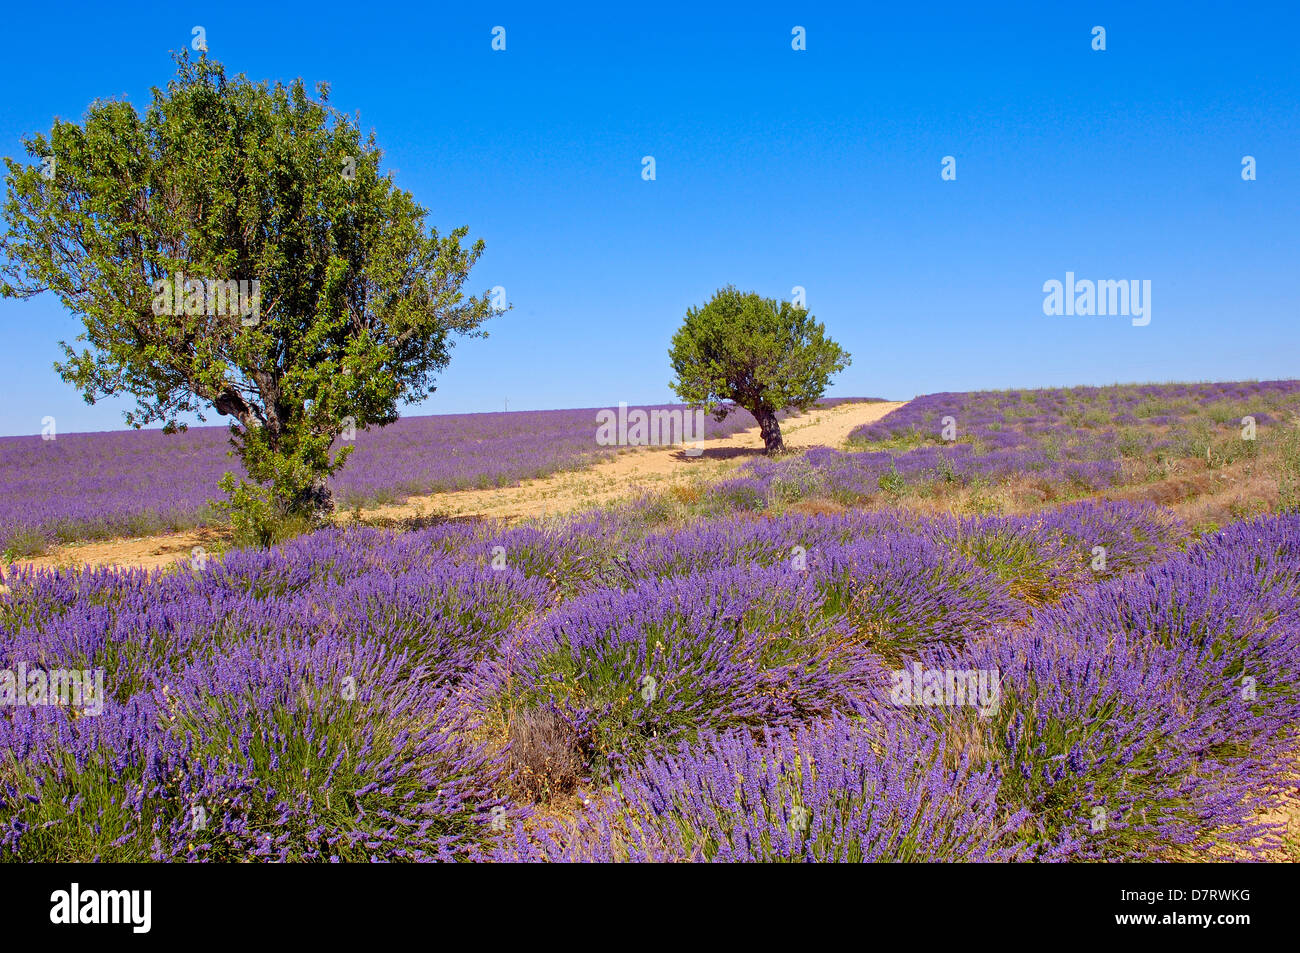 Lavender field at Plateau de Valensole. Alpes-de-Haute-Provence. Valensole, France. Stock Photo